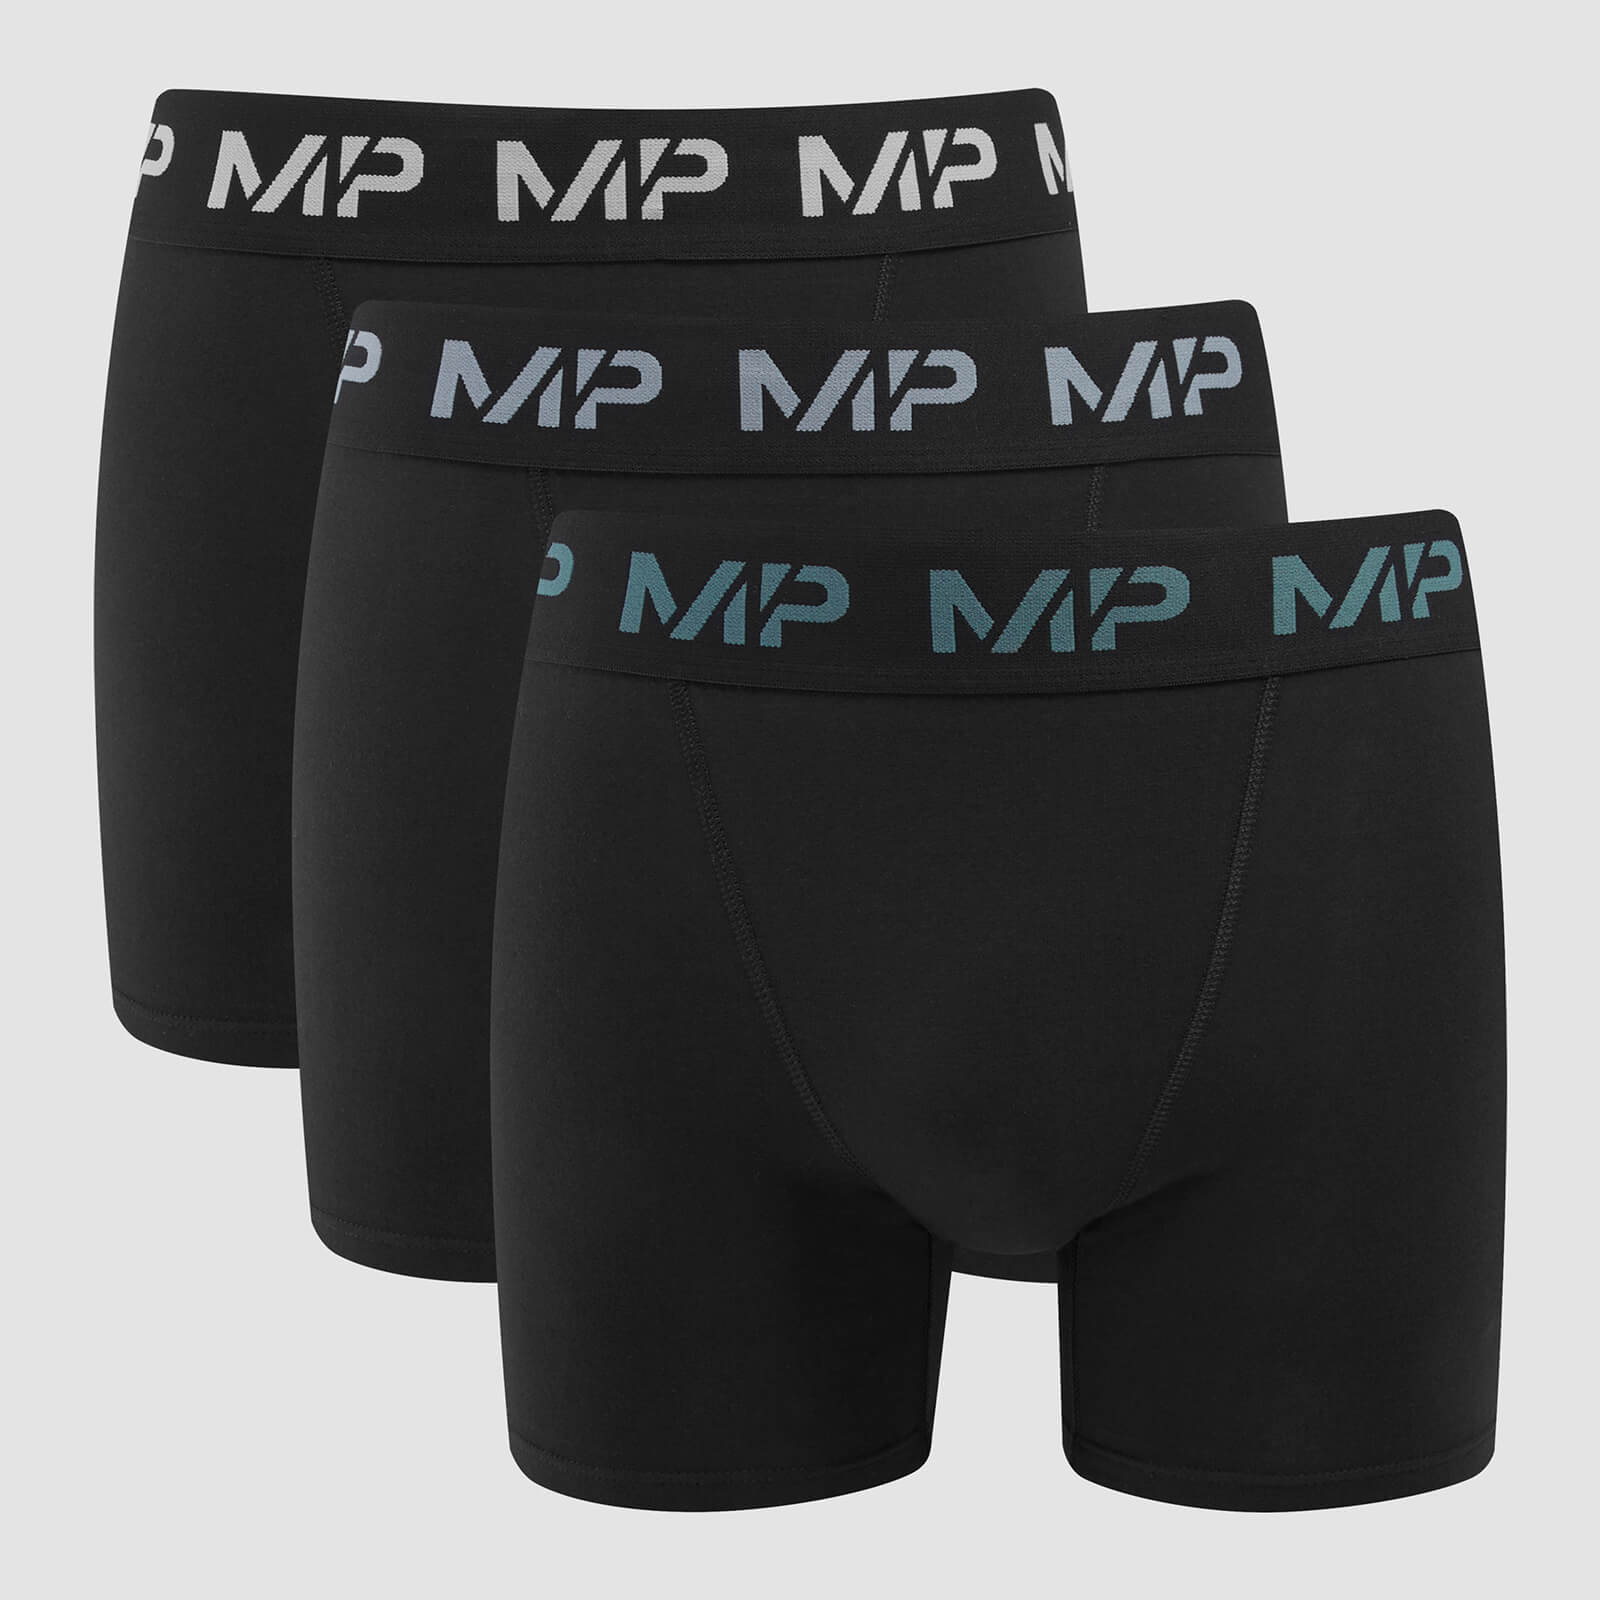 Boxers à logo coloré MP pour hommes (lot de 3) – Noir/Bleu fumé/Bleu galet/Gris foncé - XL